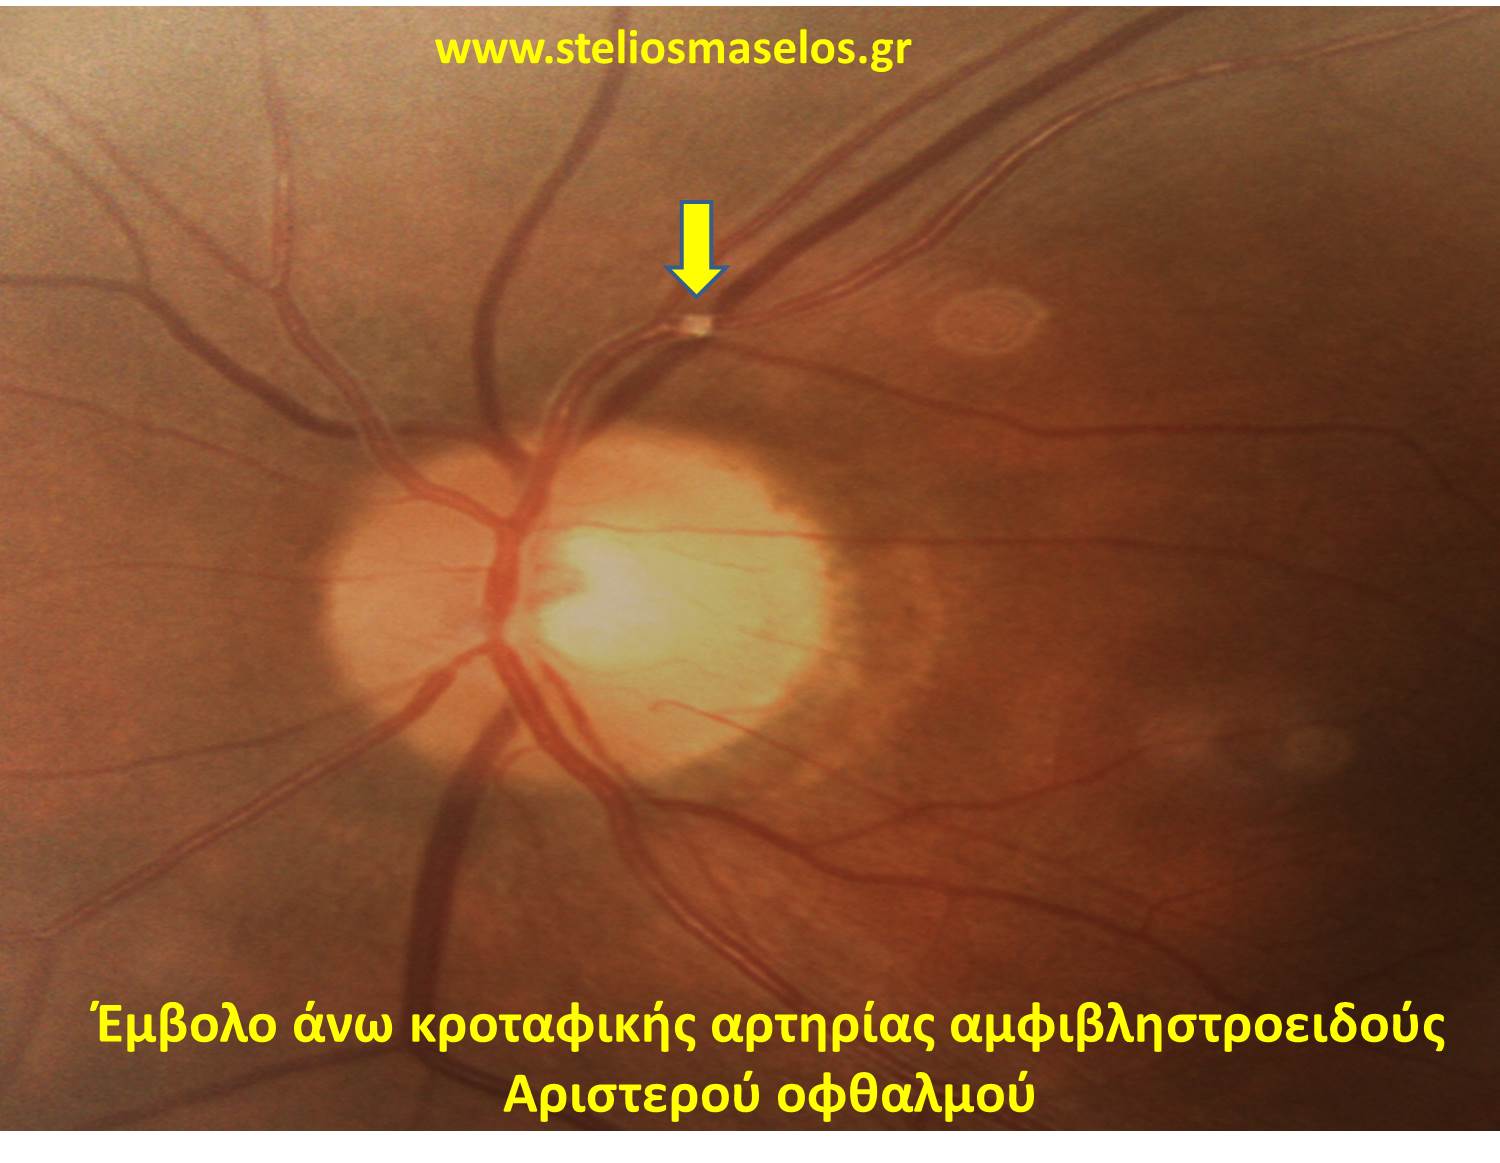 Έμβολο άνω κροταφικής αρτηρίας αμφιβληστροειδούς αριστερού οφθαλμού-